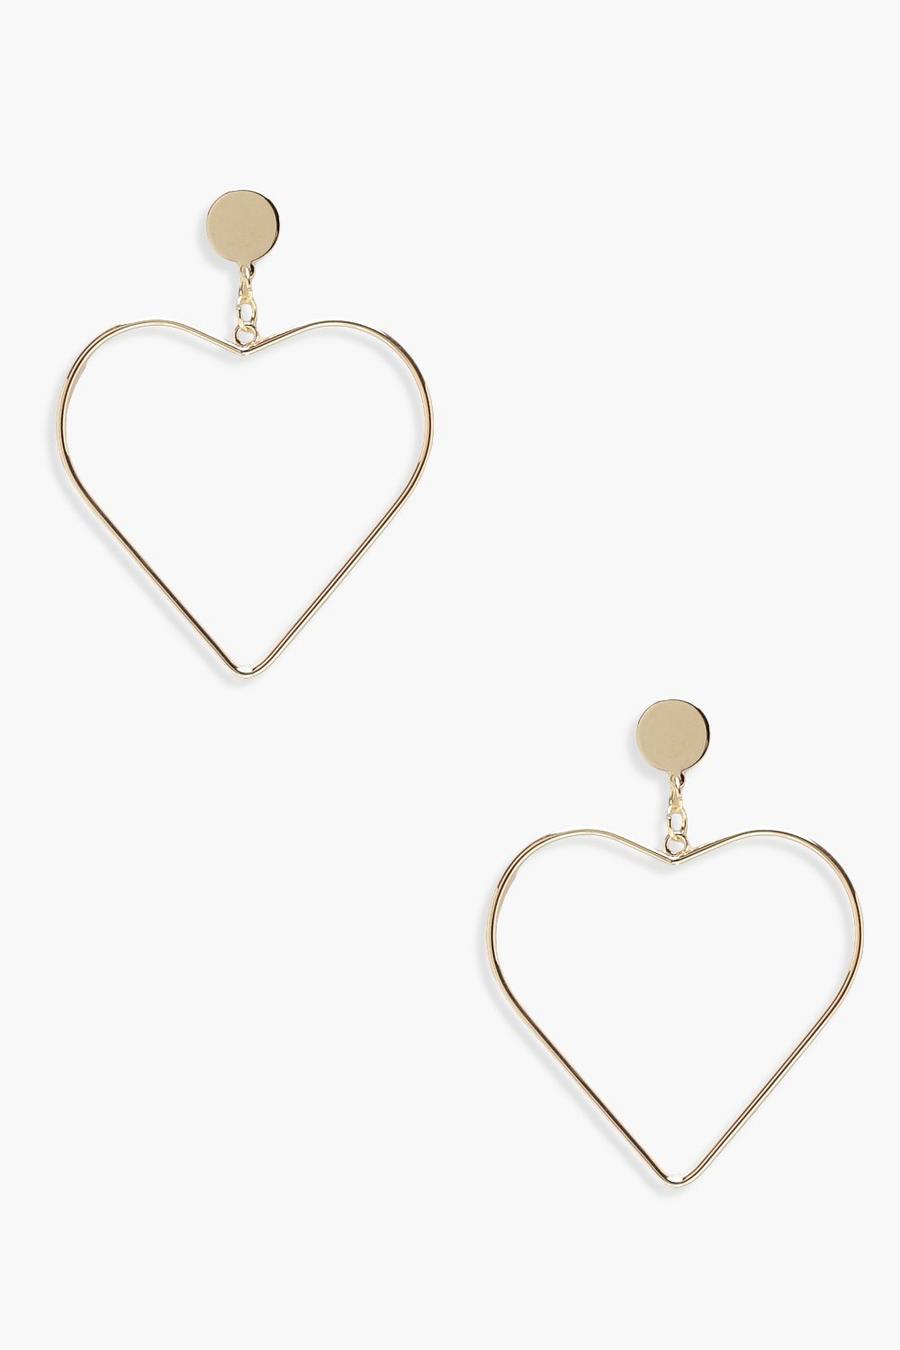 Gold Heart Shaped Earrings